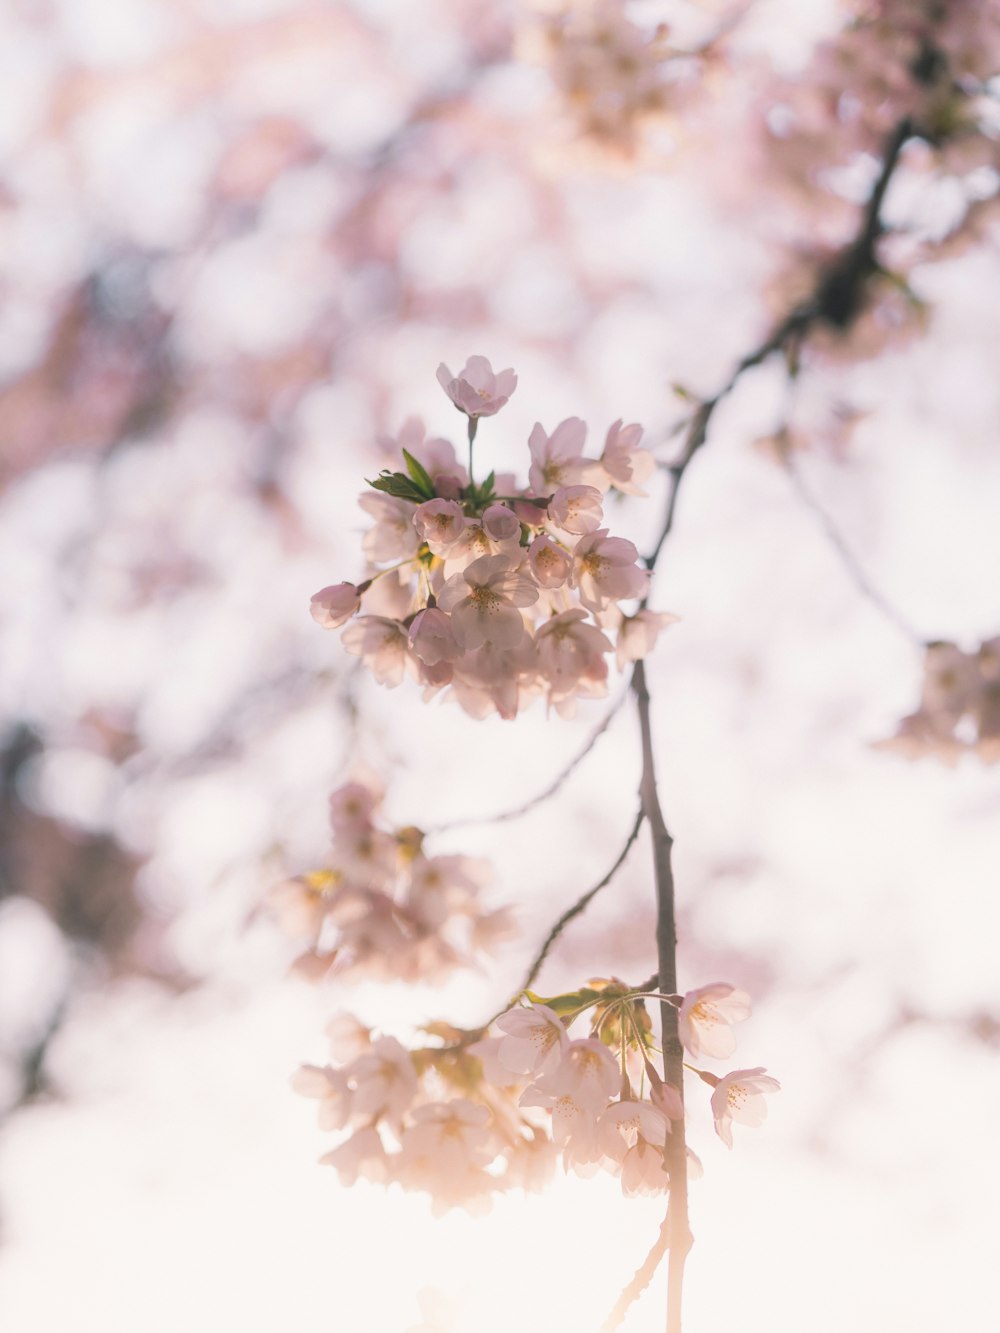 fleur de cerisier blanc et rose en gros plan photographie